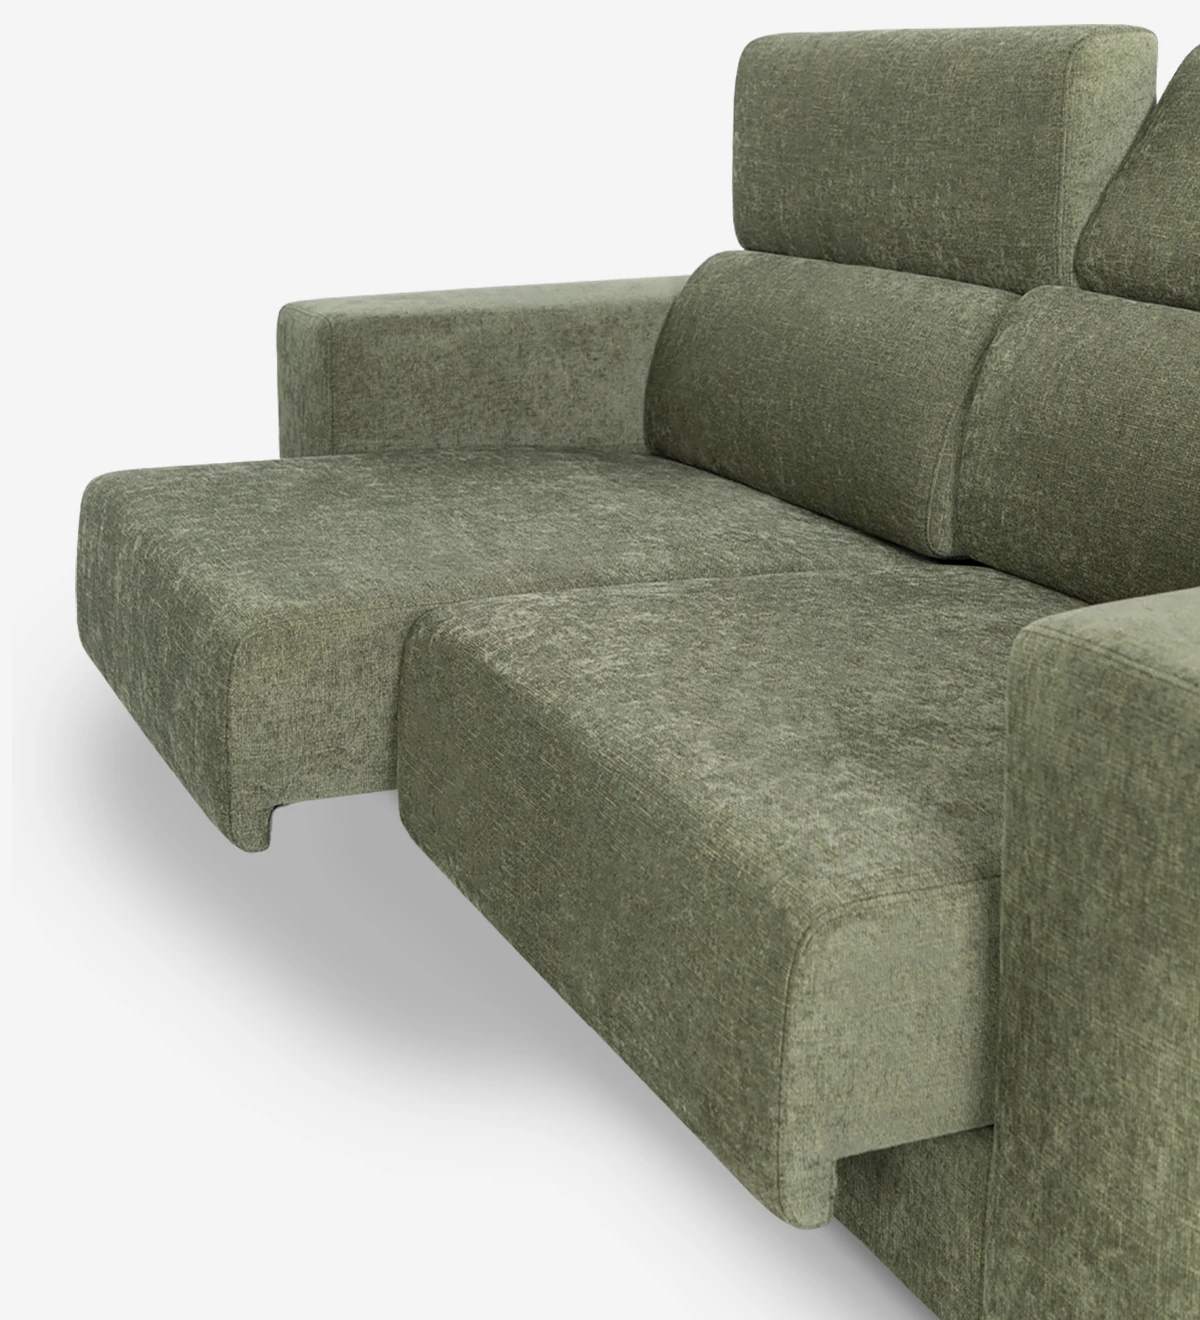 Sofá de 2 lugares estofado a tecido, com apoios de cabeça reclináveis e assentos deslizantes.